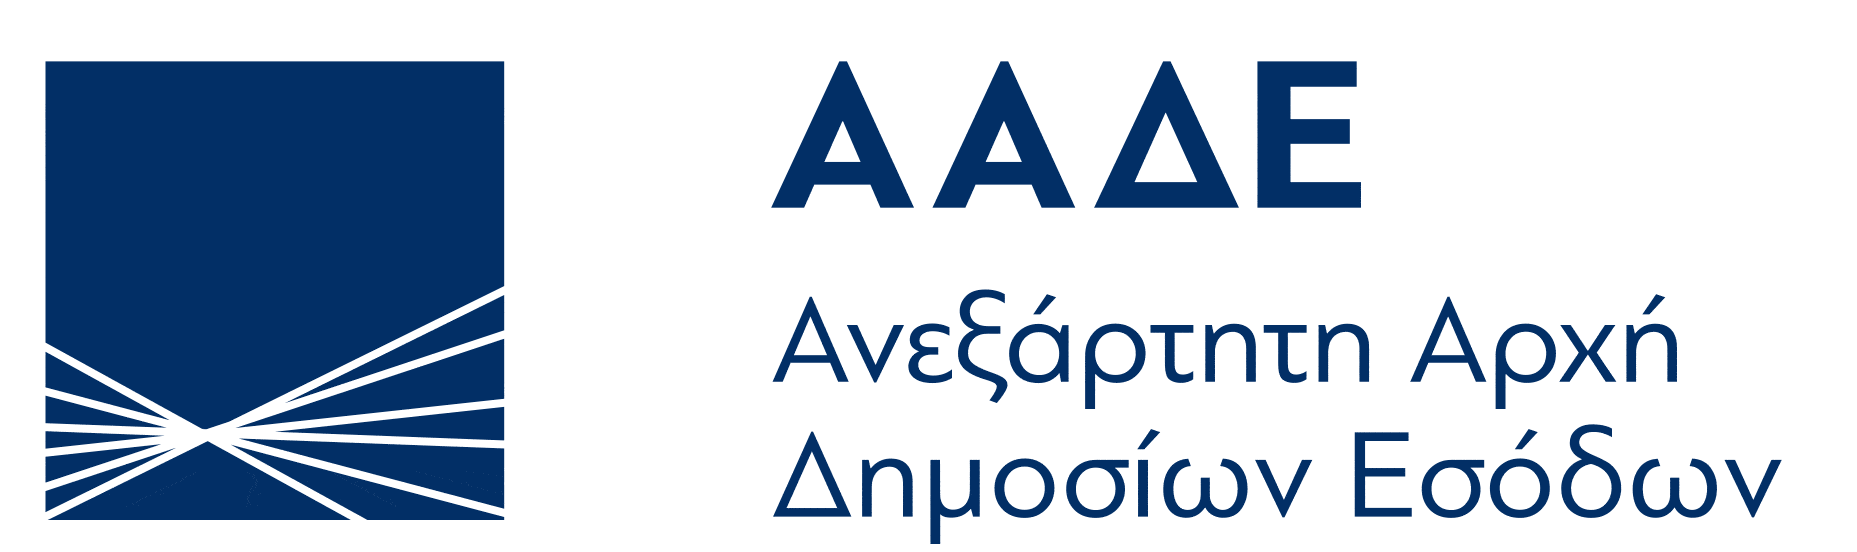 AADE logo 